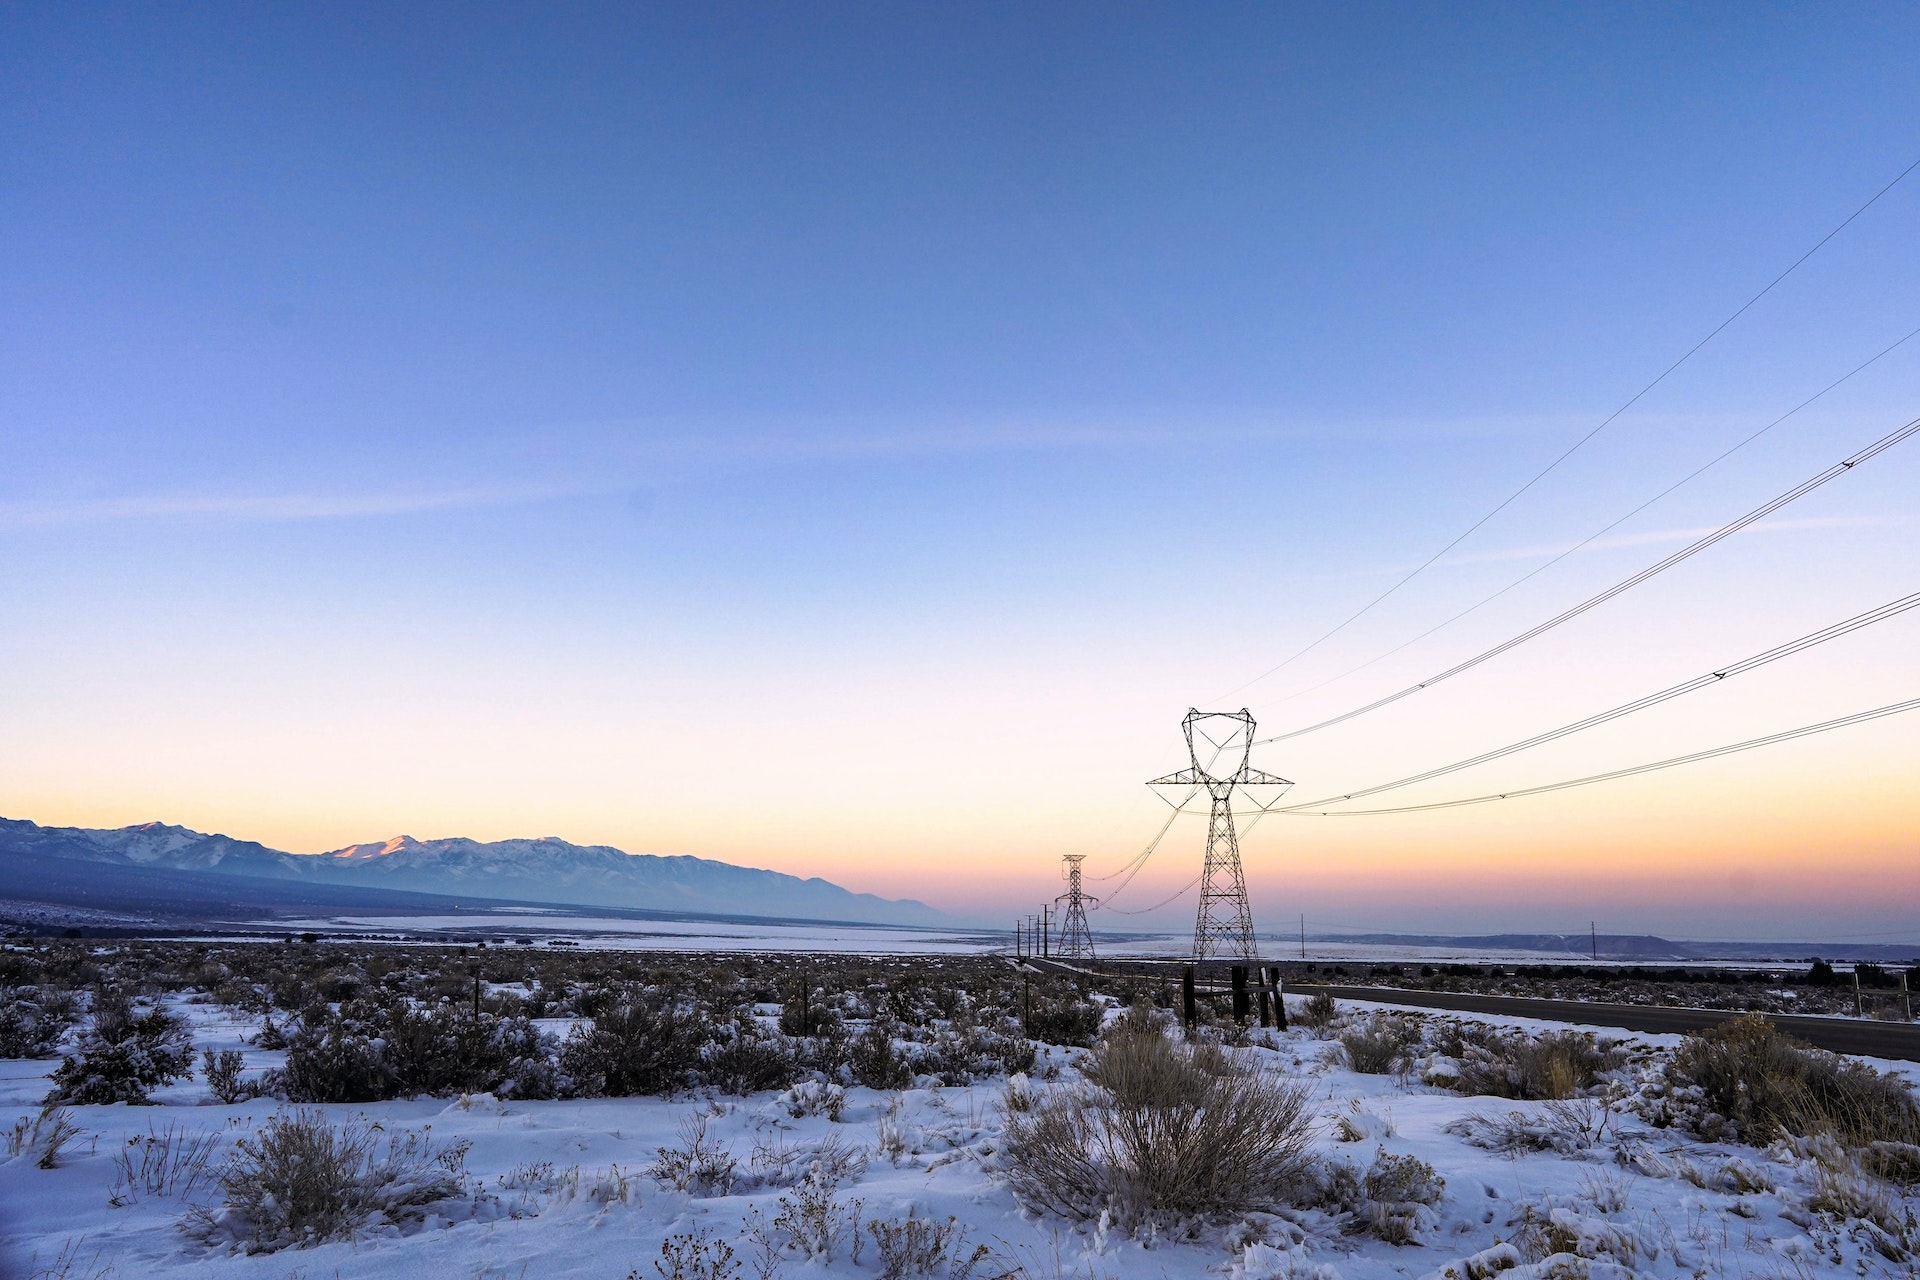 En cas de tension sur le réseau électrique cet hiver, le gouvernement pourrait procéder à des coupures ciblées